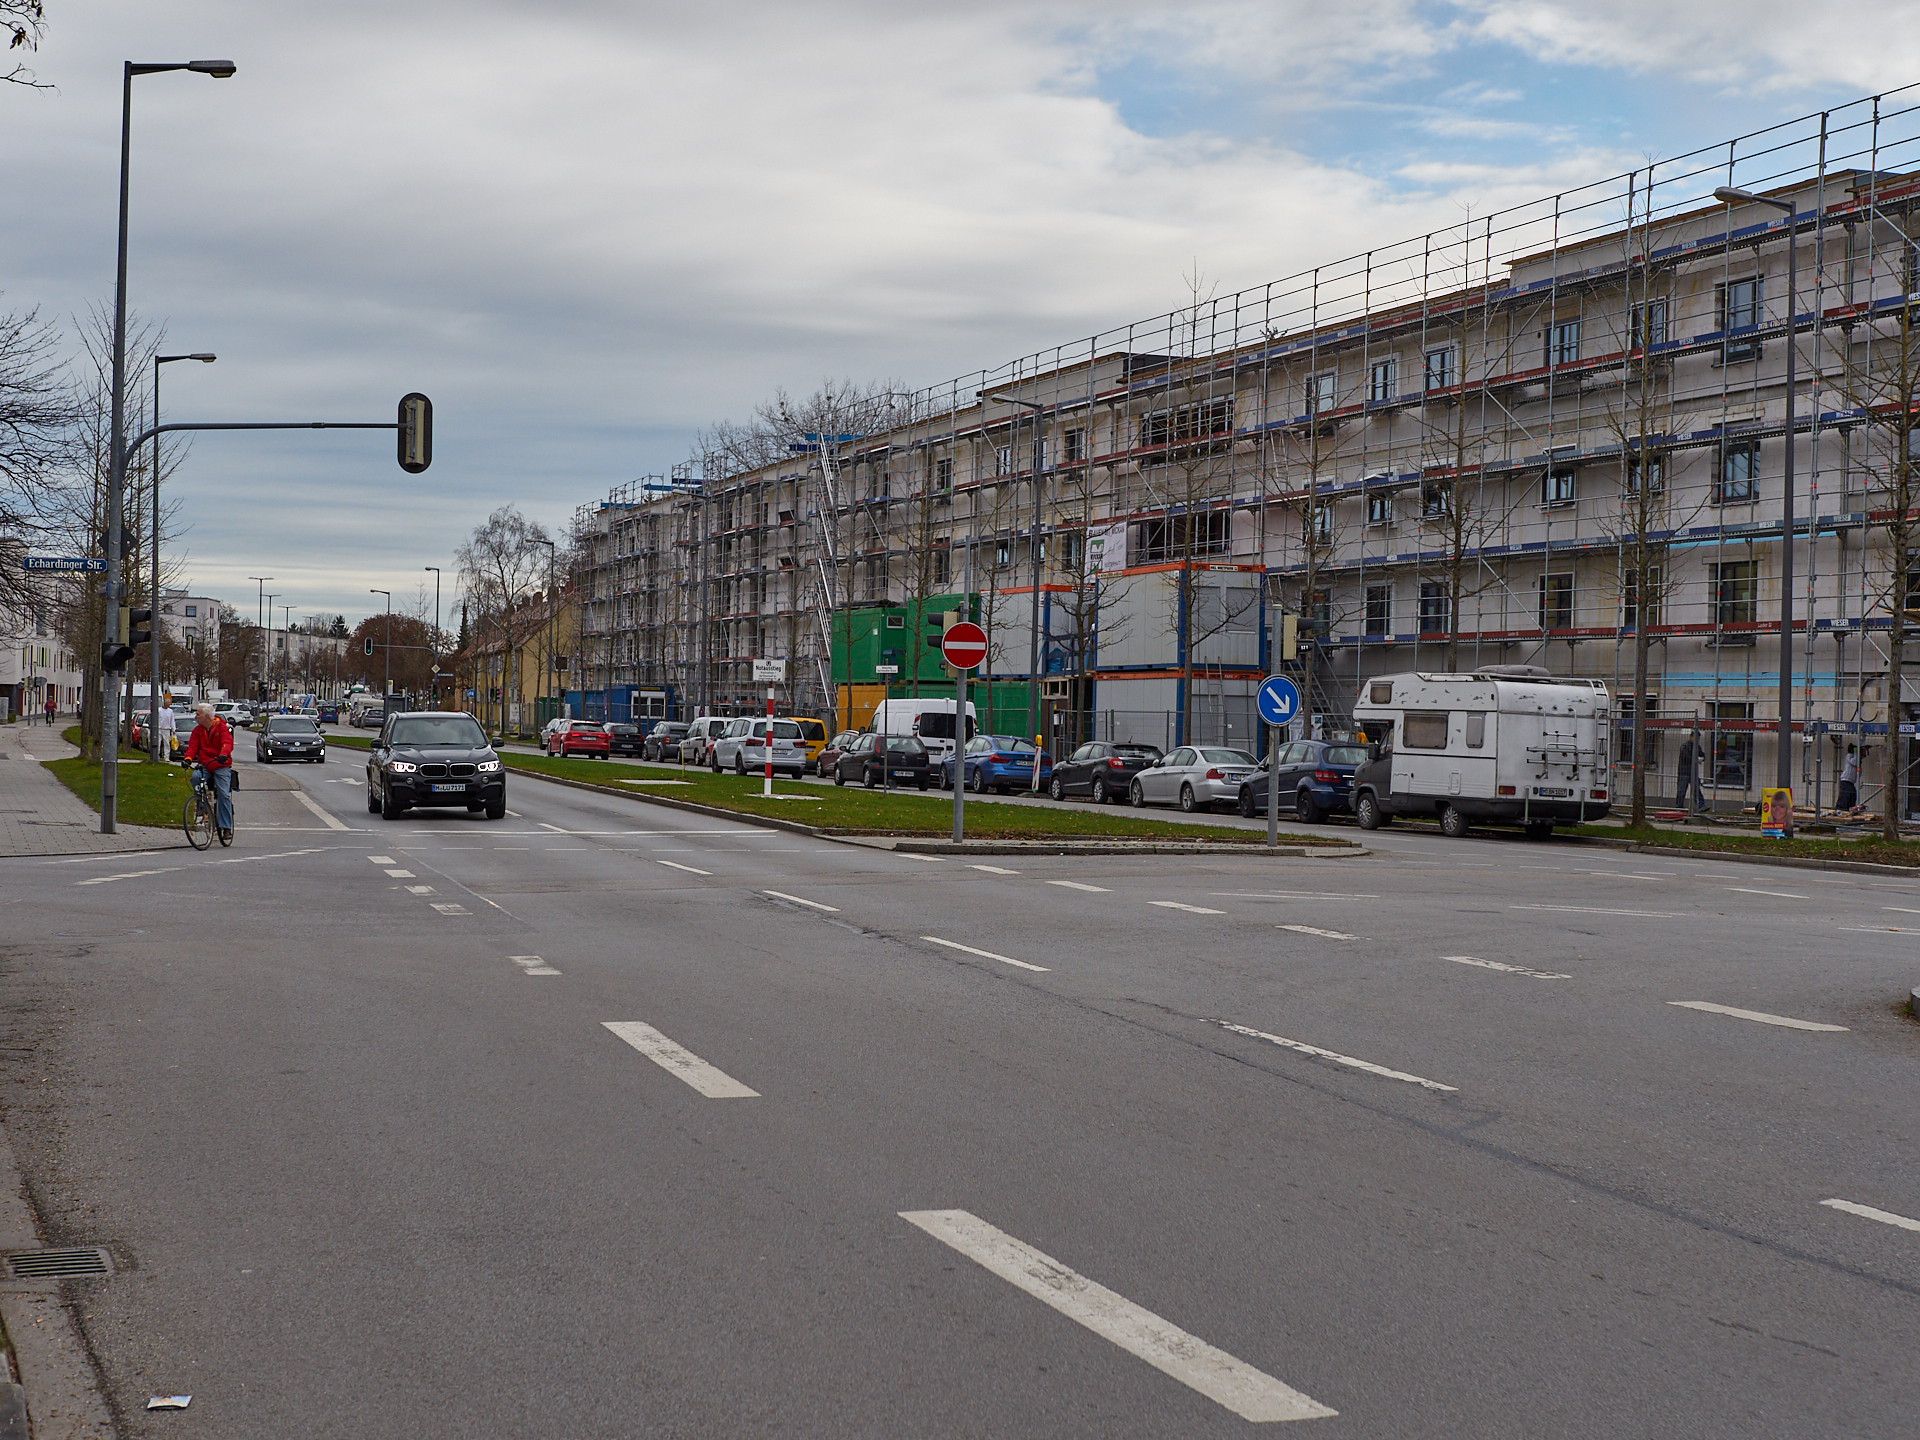 07.12.2018 - Baustelle Maikäfersiedlung in der Bad Schachener Straße in Neuperlach